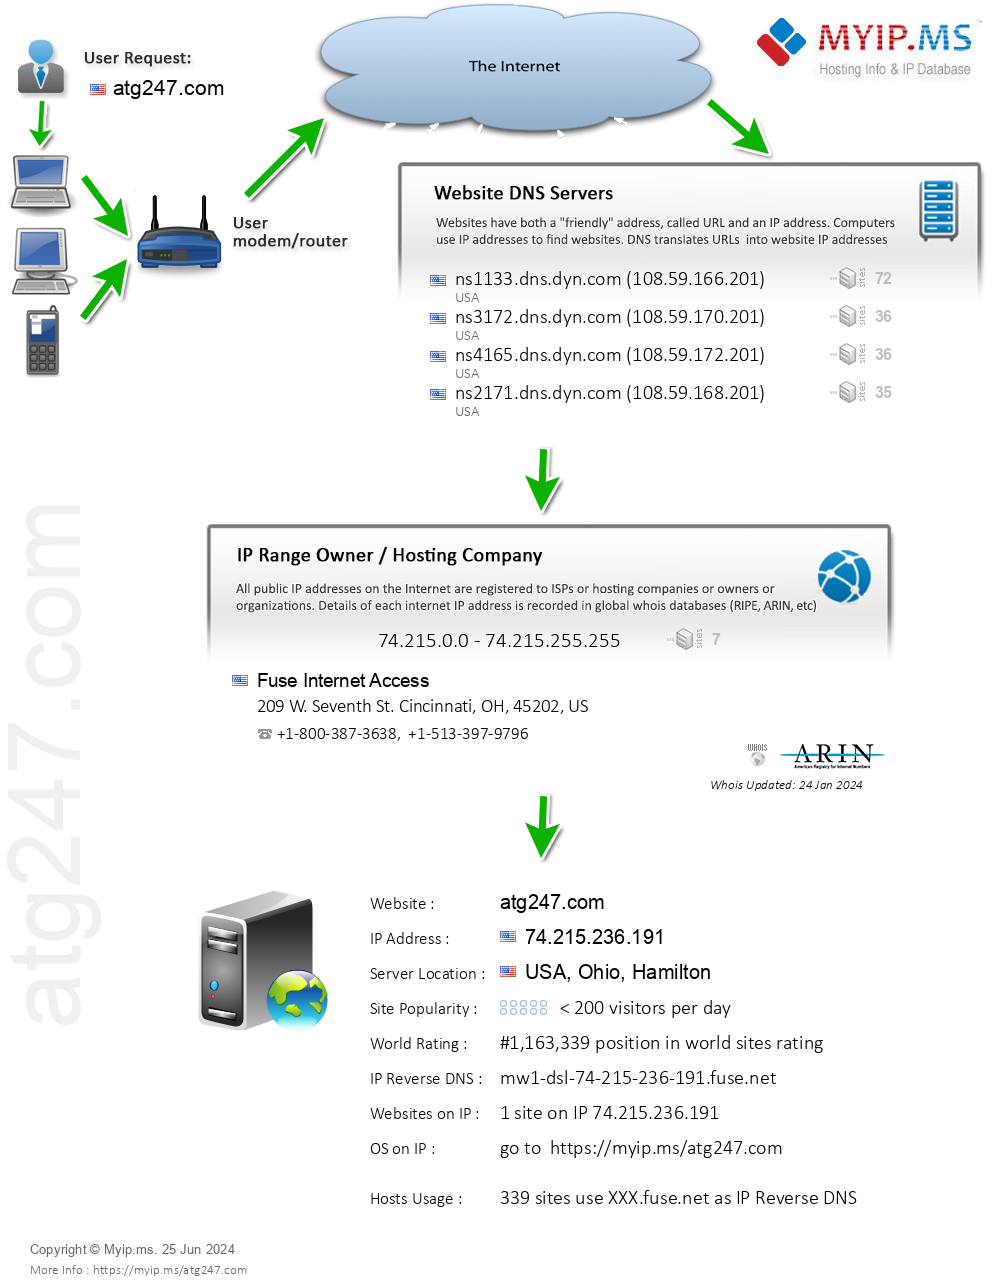 Atg247.com - Website Hosting Visual IP Diagram